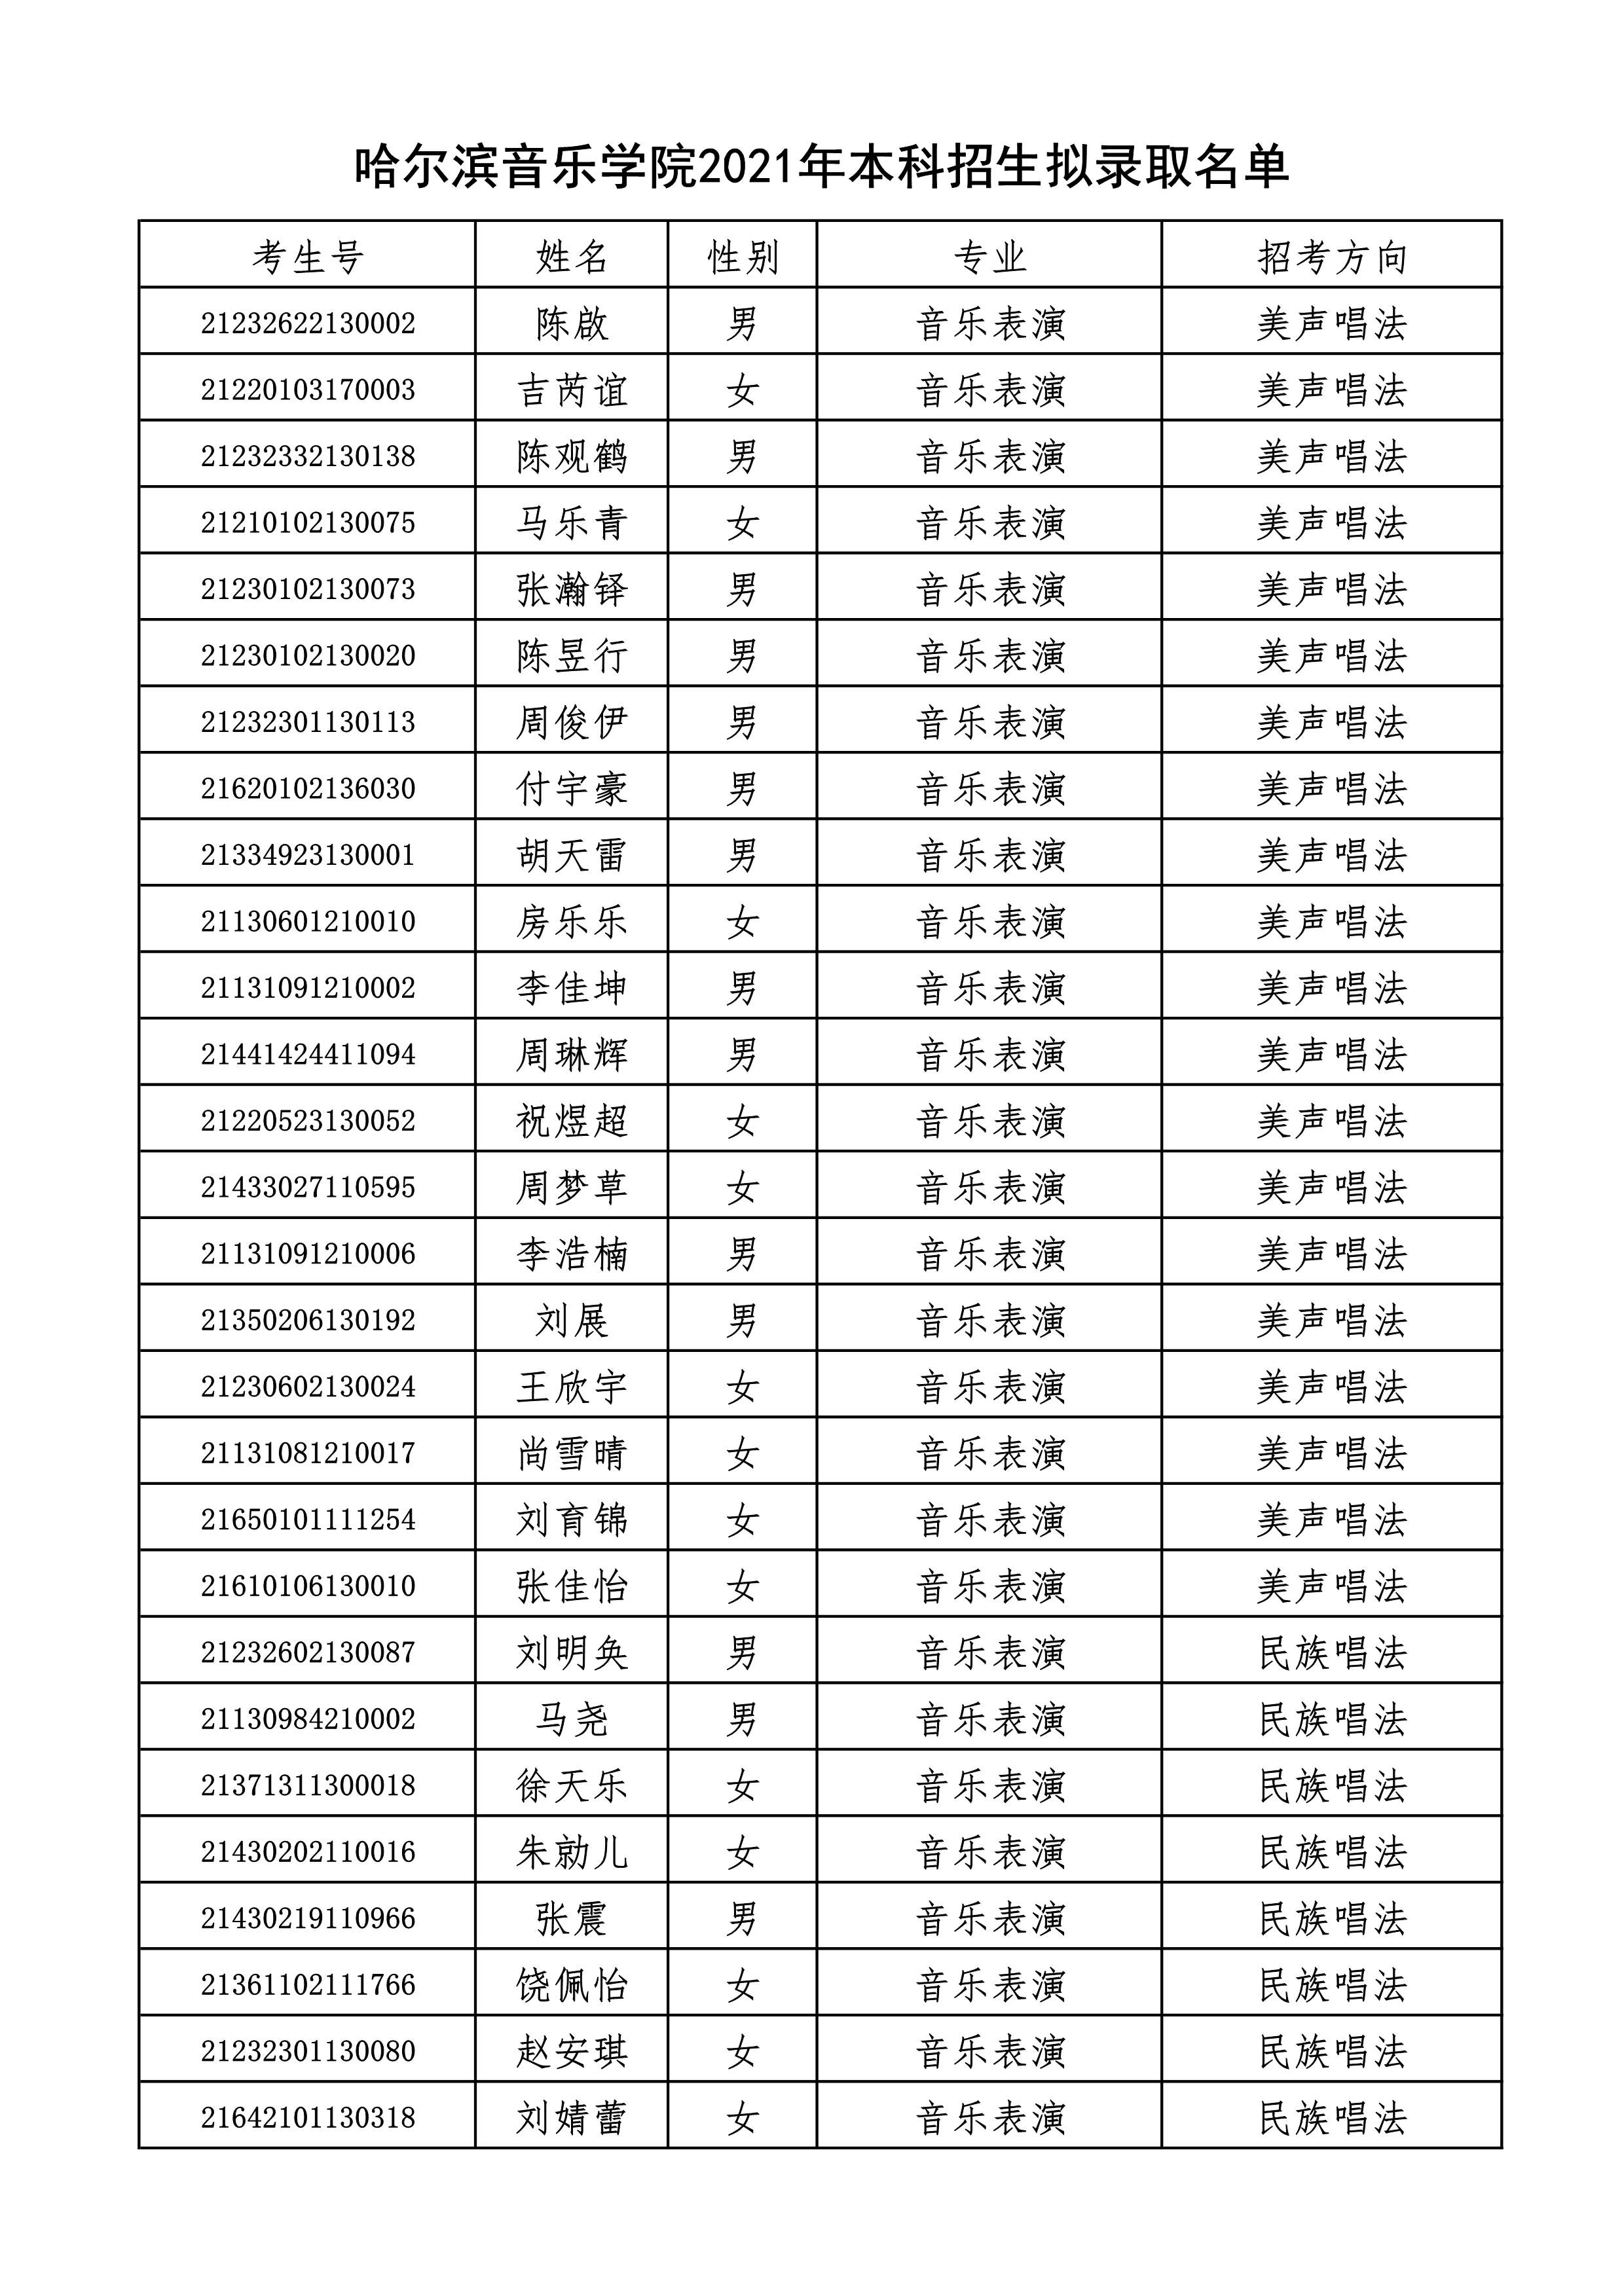 附件2+哈尔滨音乐学院2021年本科招生拟录取名单_1.jpg